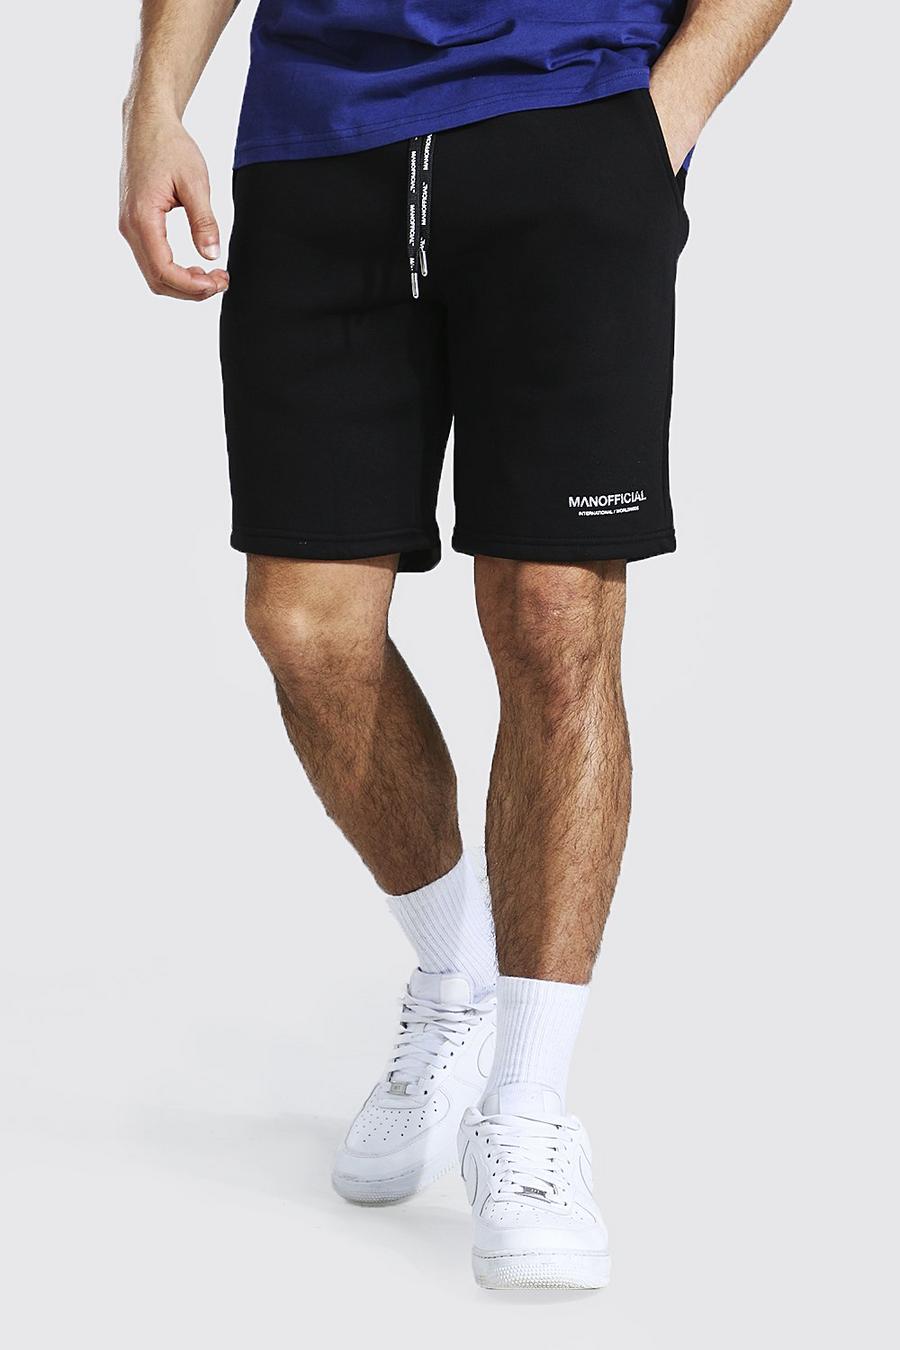 Pantalones cortos de punto medio ajustados en cintura Man Official image number 1